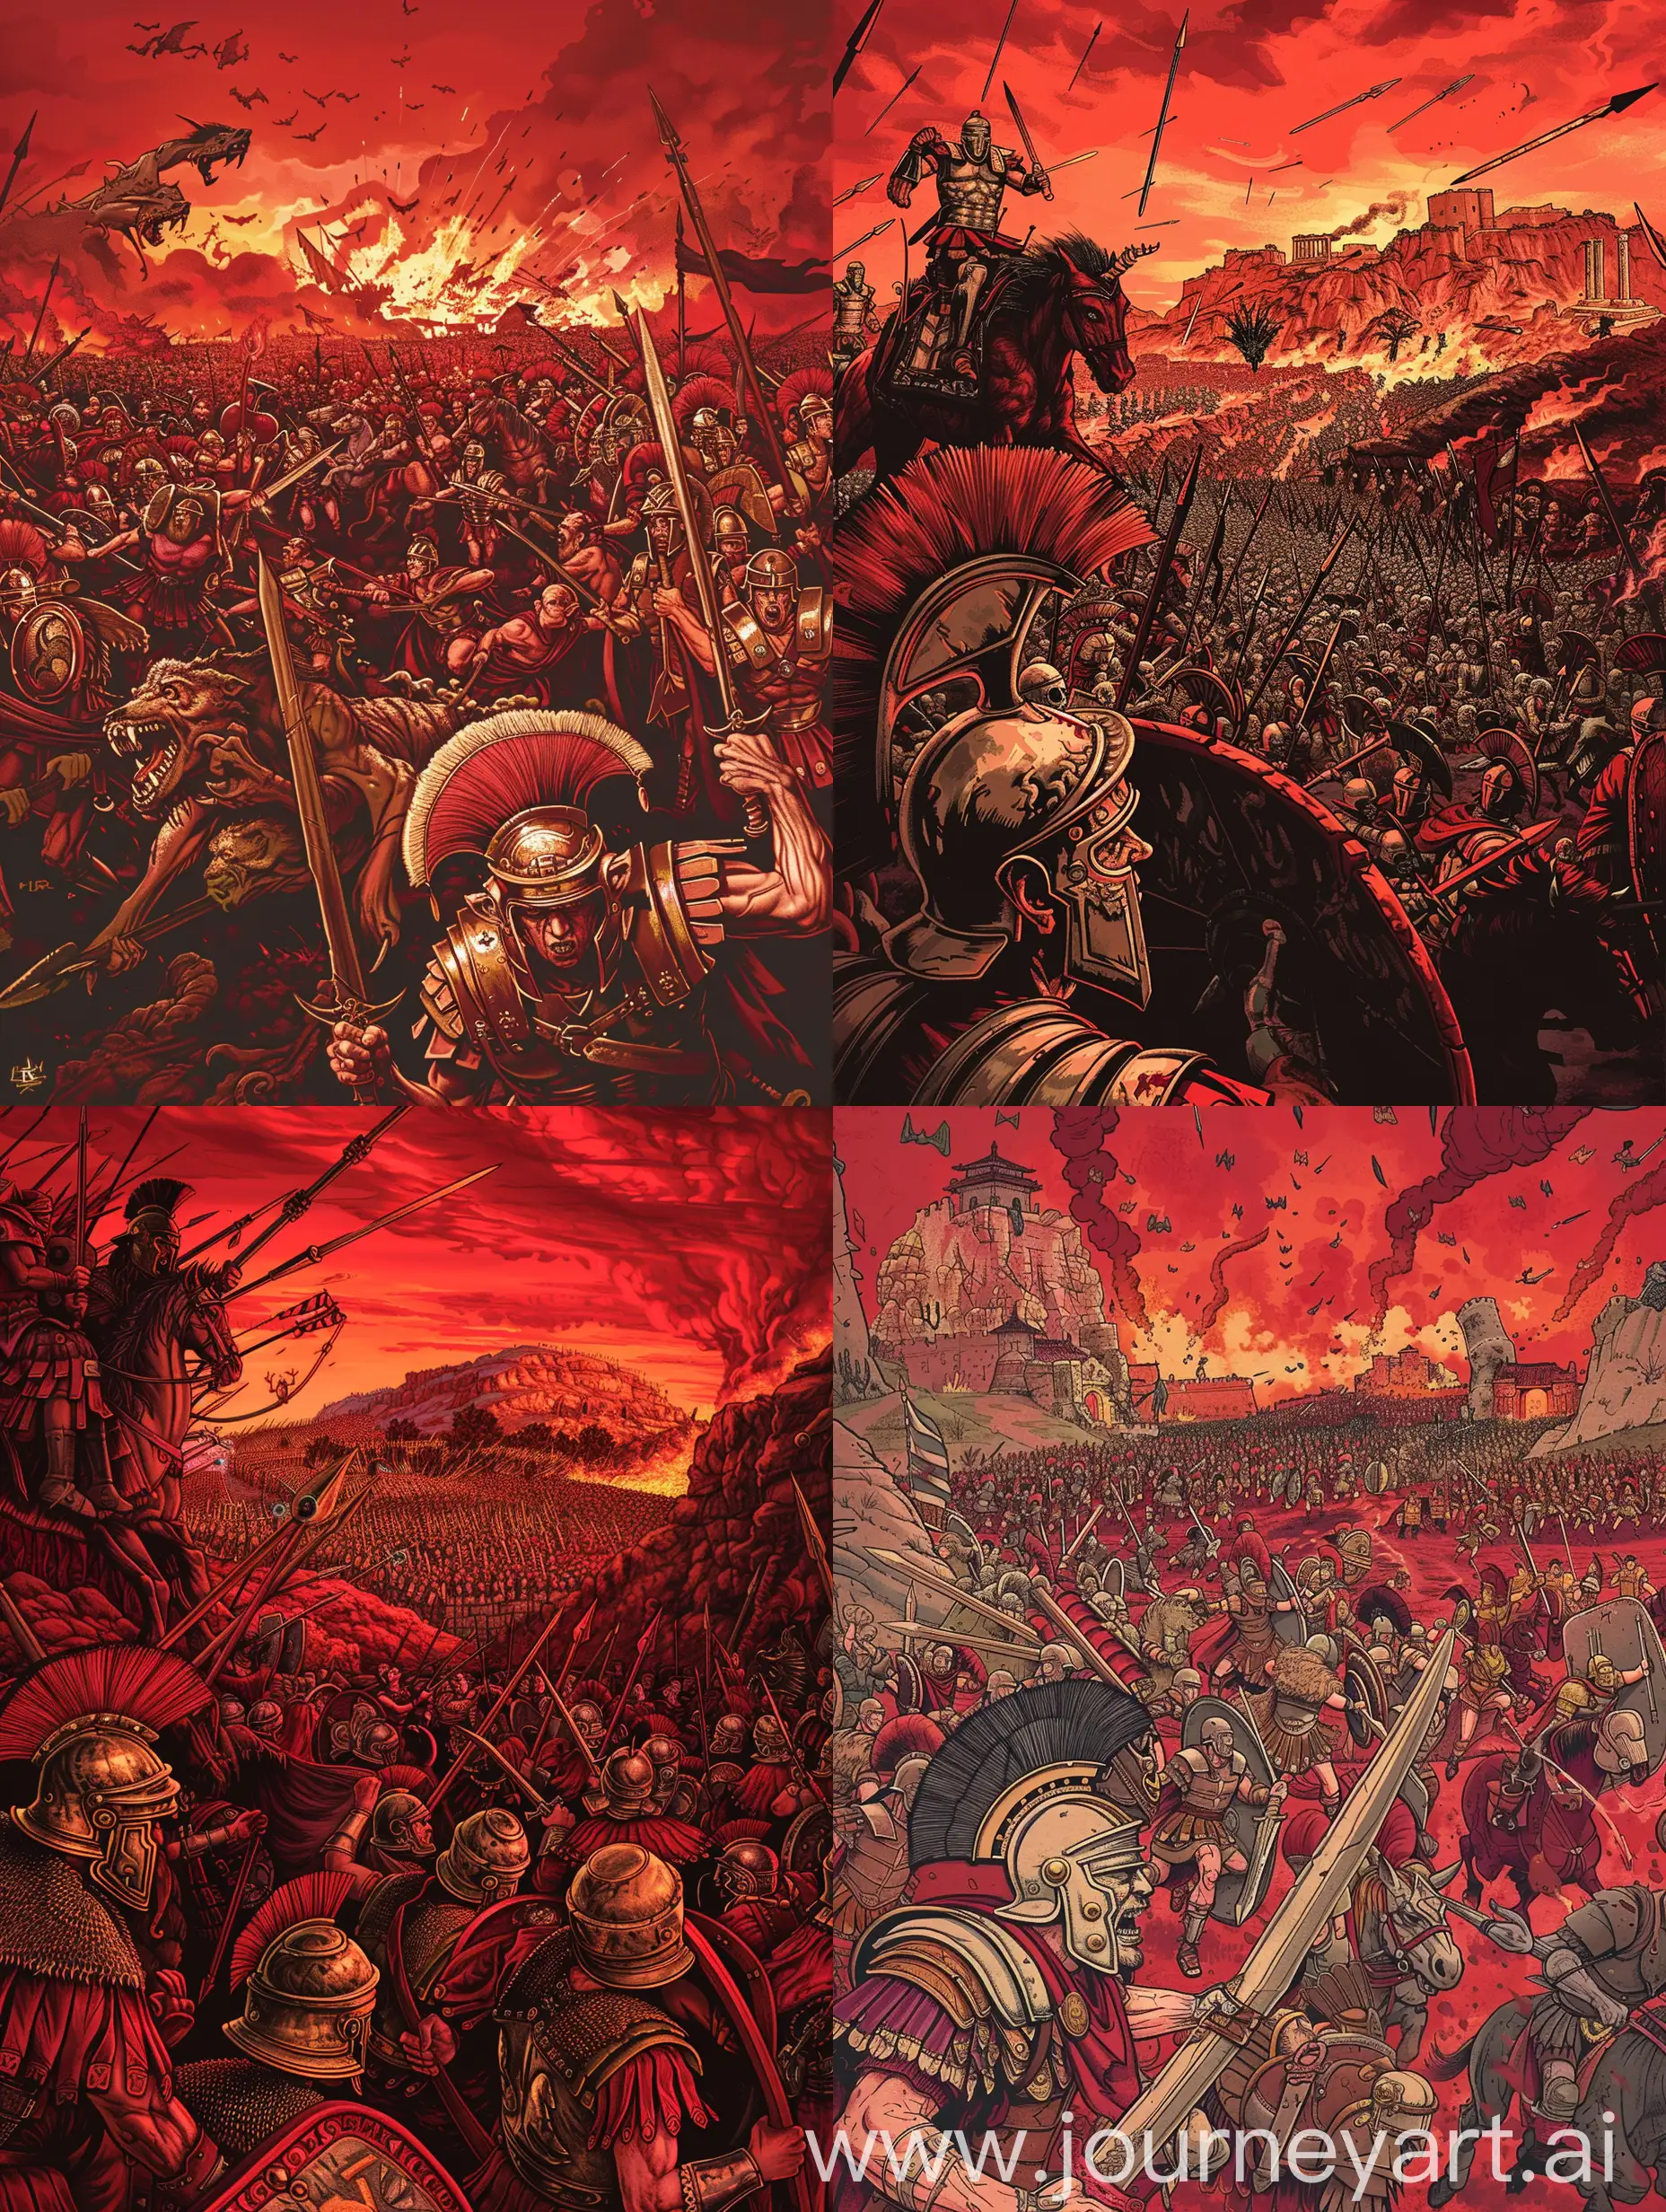 Epic-Roman-Legion-vs-Goblin-Horde-Battle-in-Fiery-Landscape